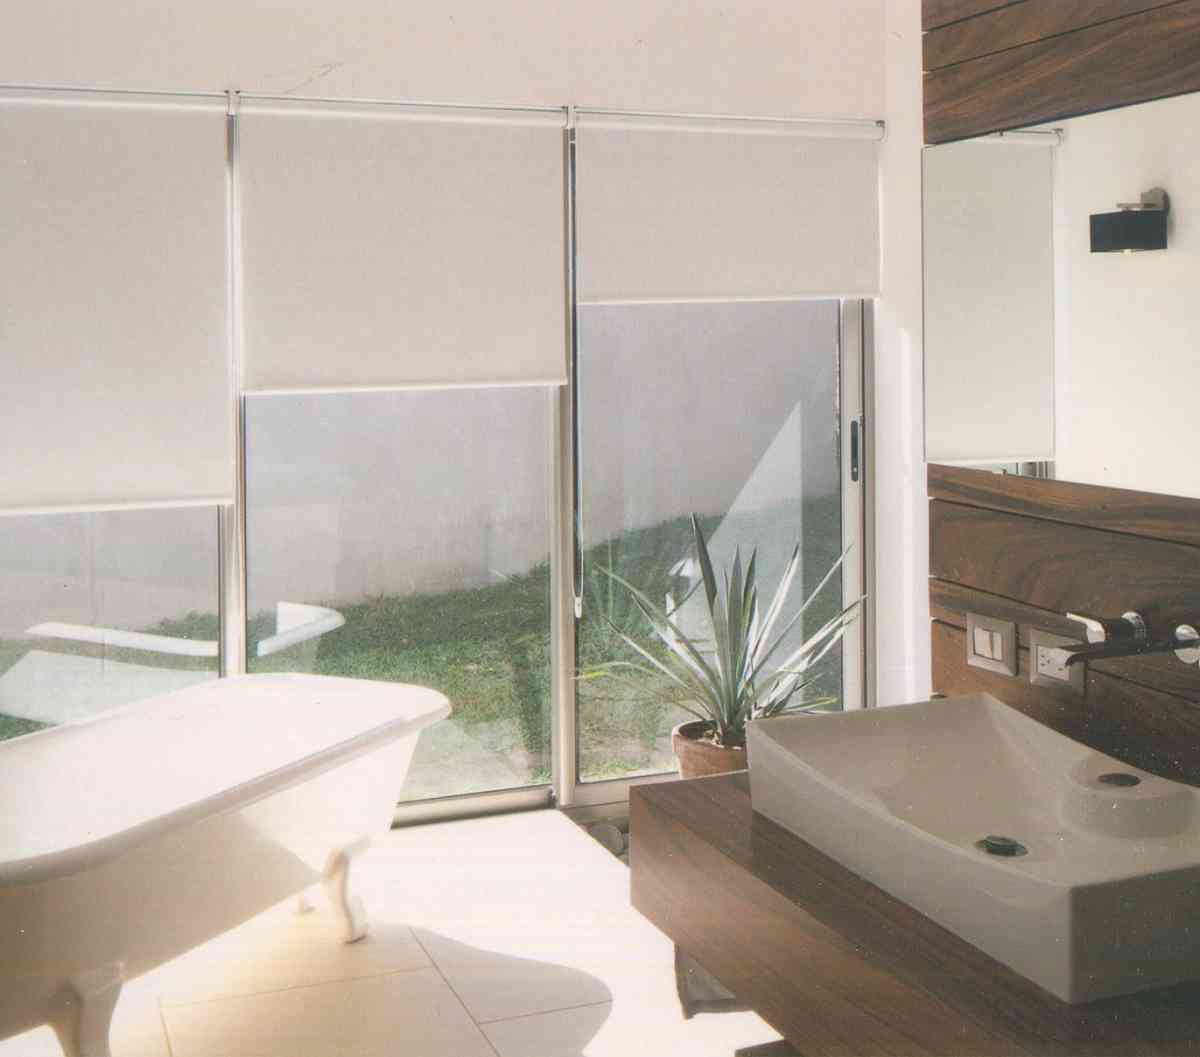 捲簾天窗設計：美觀窗飾選擇，有效遮光，提供隱私保護，營造舒適室內環境，完美配合天窗設計，增添家居美感。